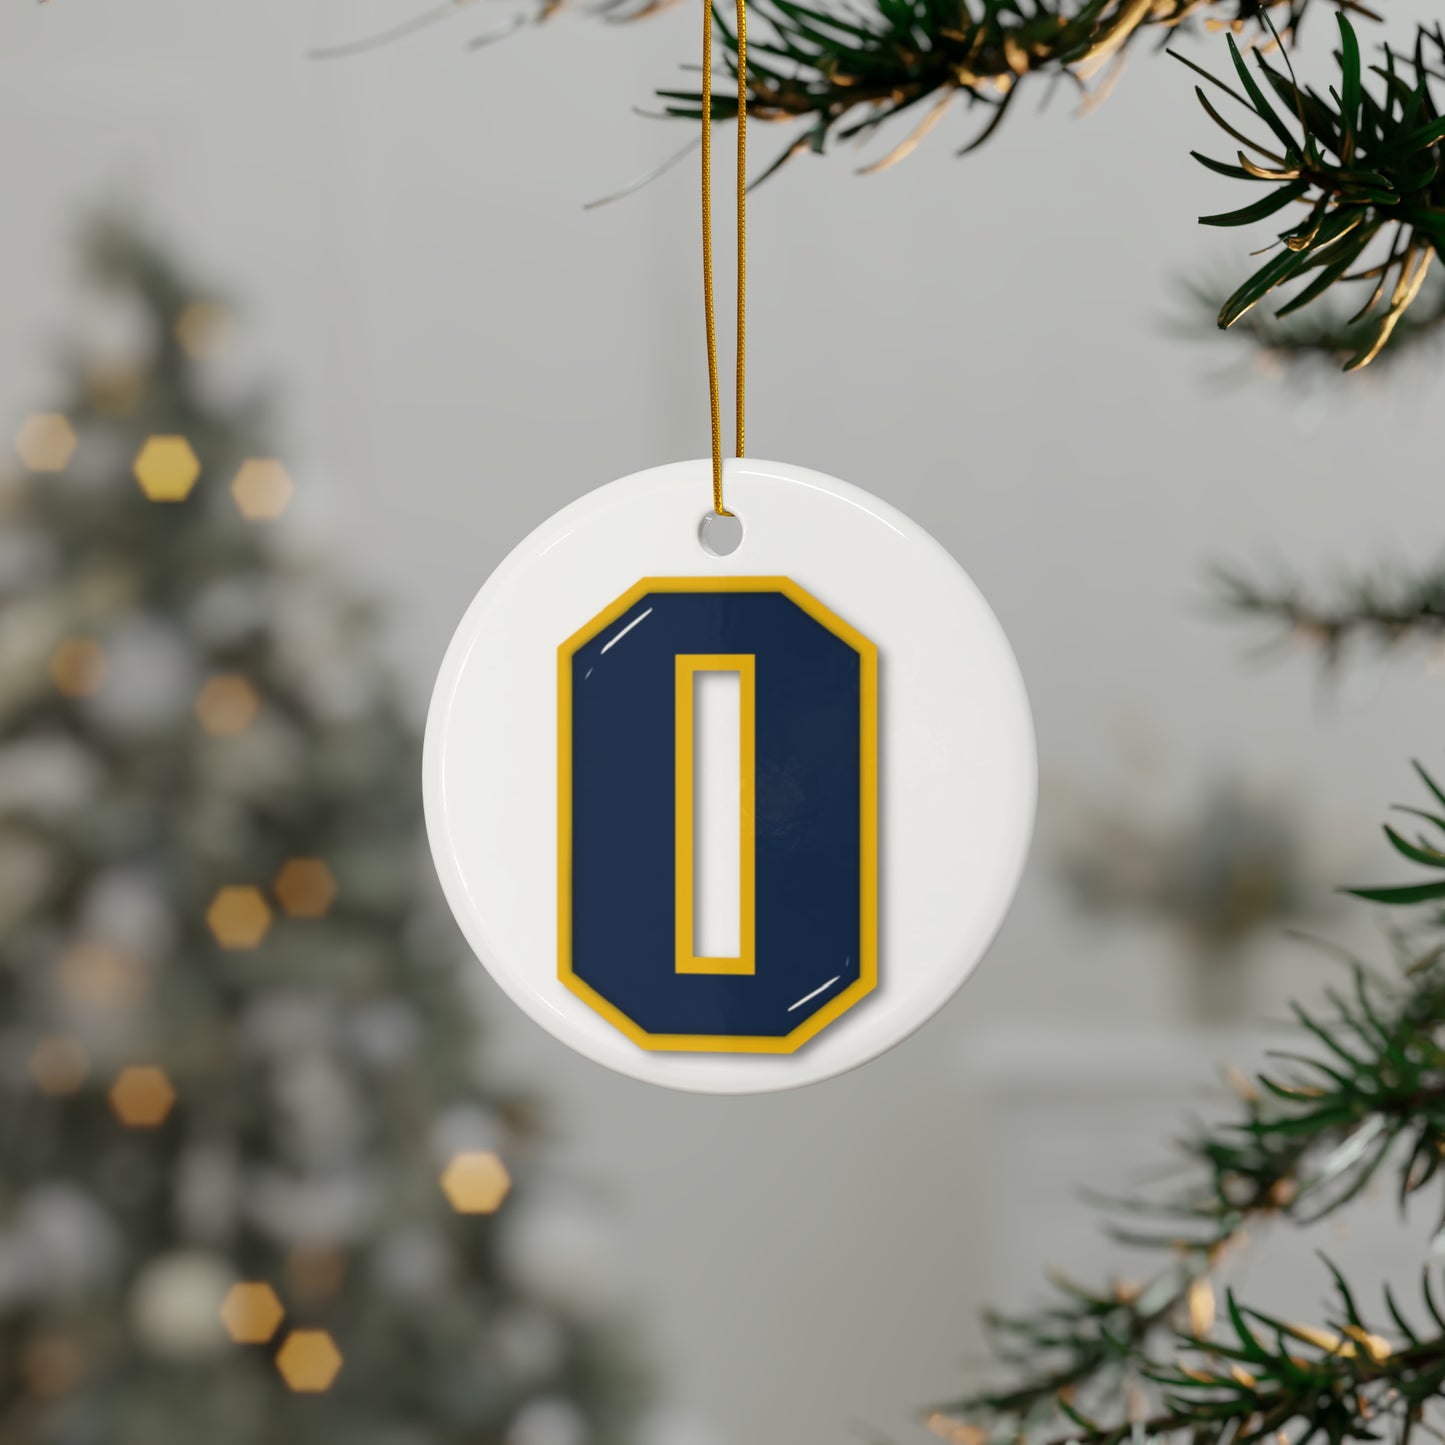 Oxford "O" Ornament